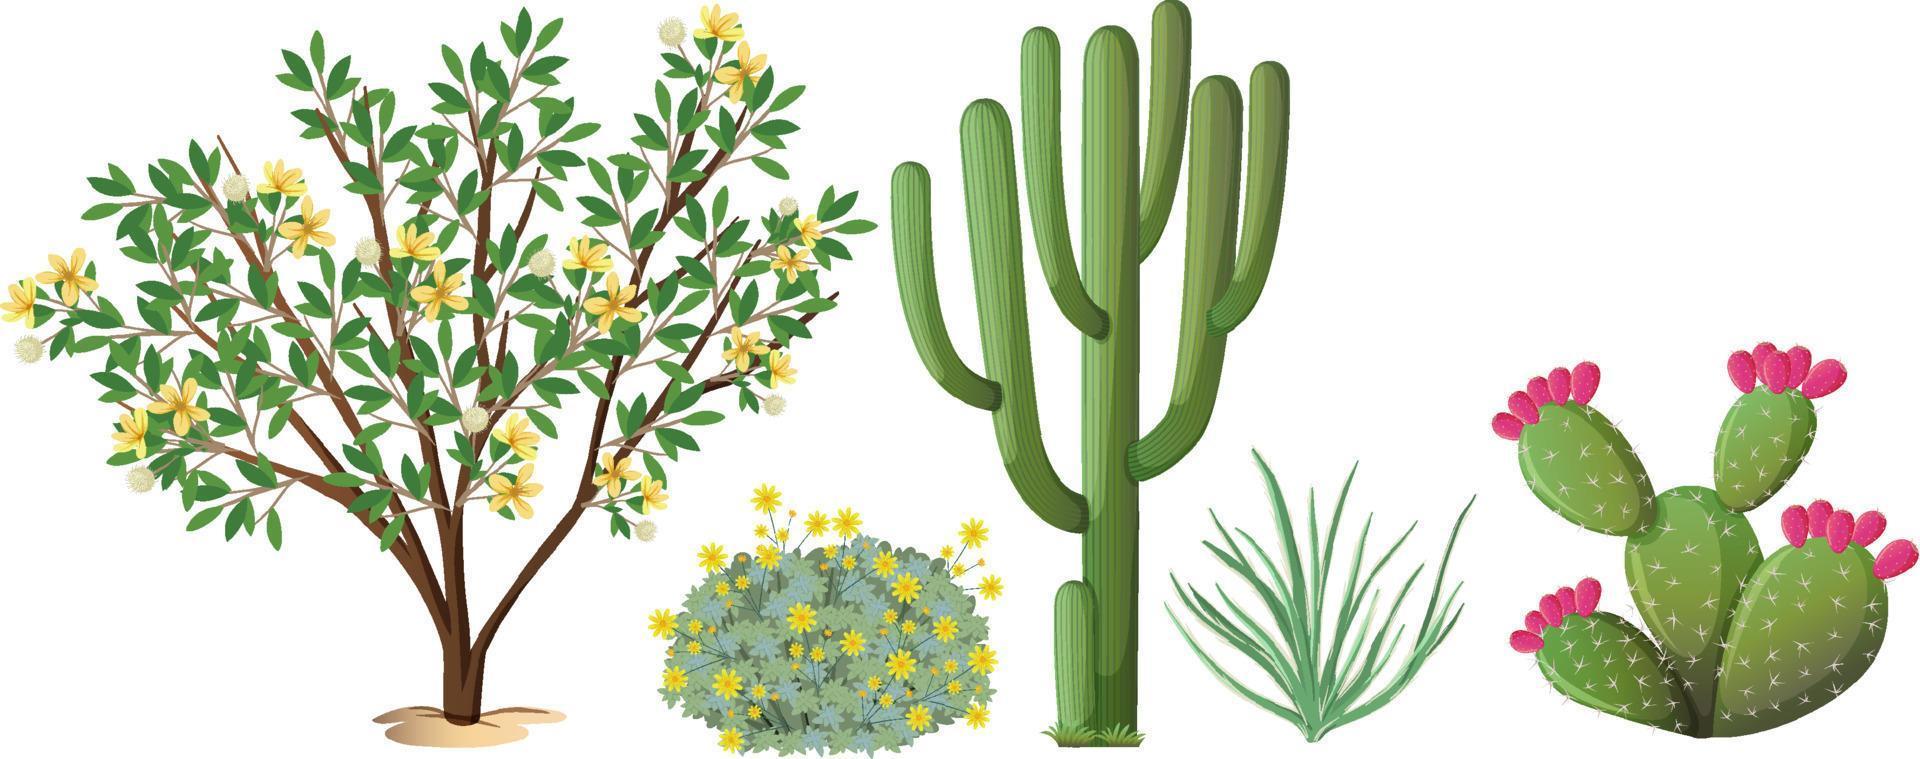 olika typer av kaktusar och träd vektor